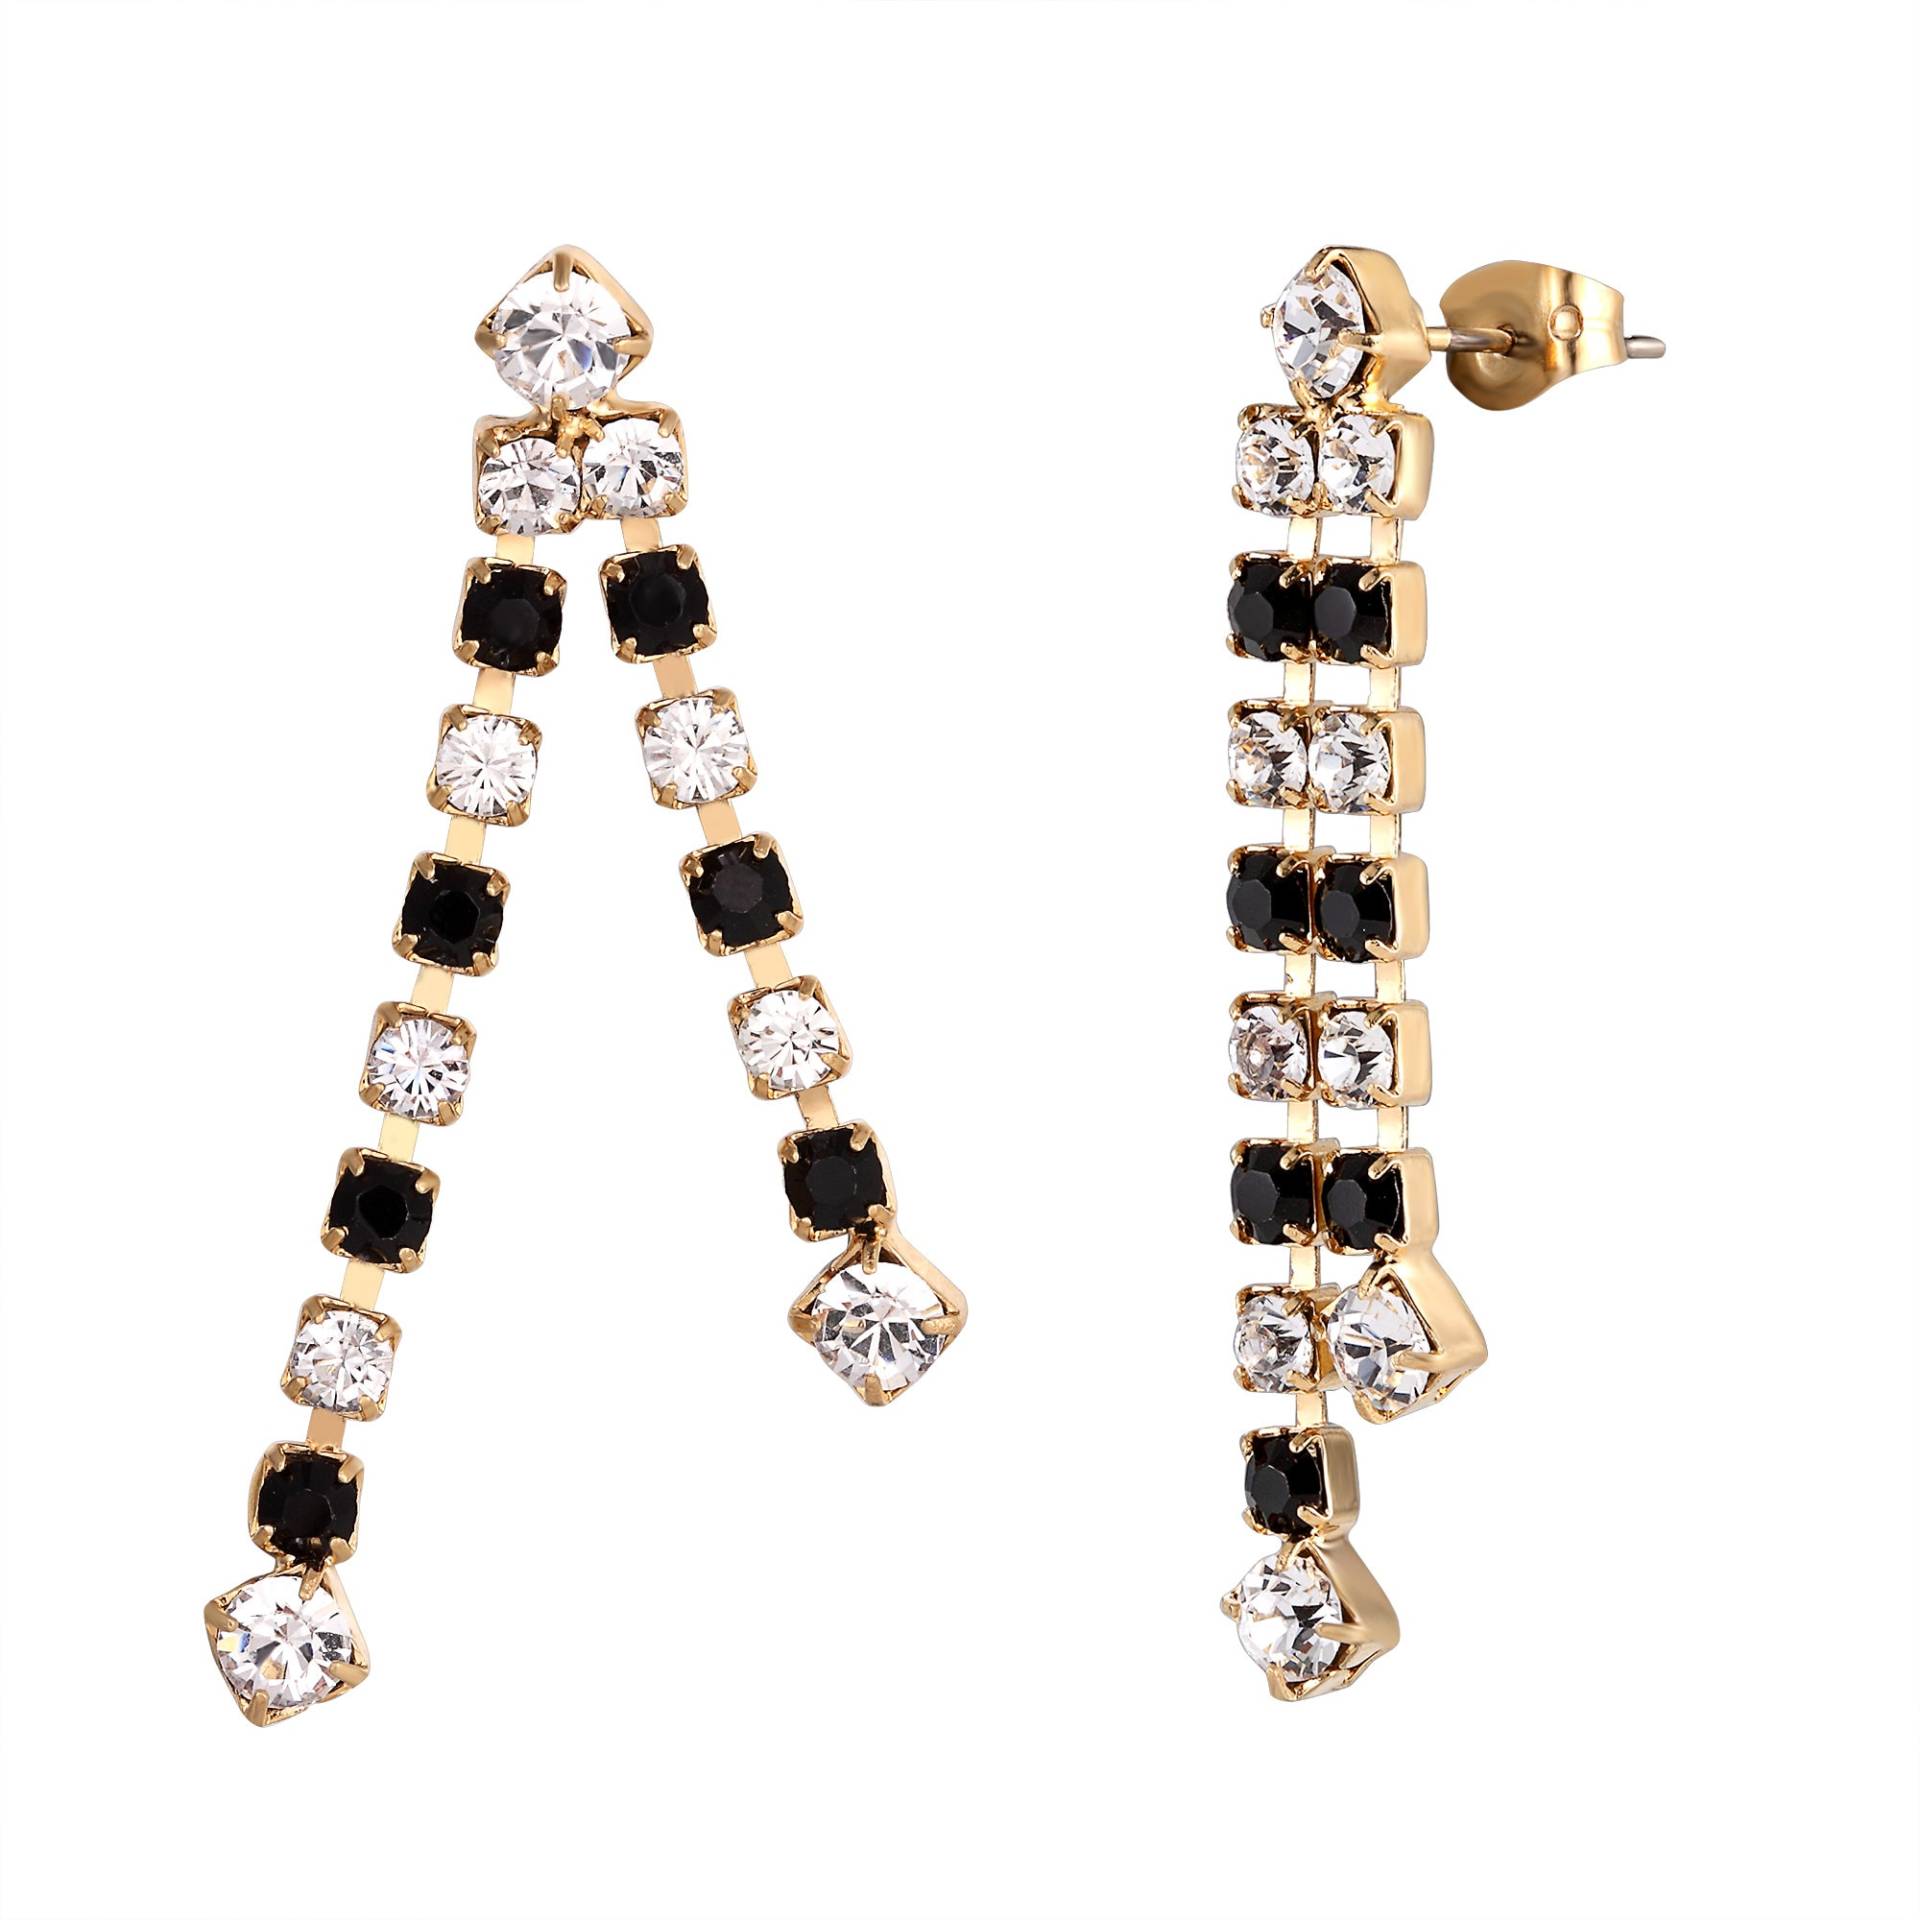 Schwarz-Weiß Swarovski Kristall Ohrringe - Damen Ohrringe, Schmuck, Accessoires, Zierliche Farbohrringe von SquarePearJewellery